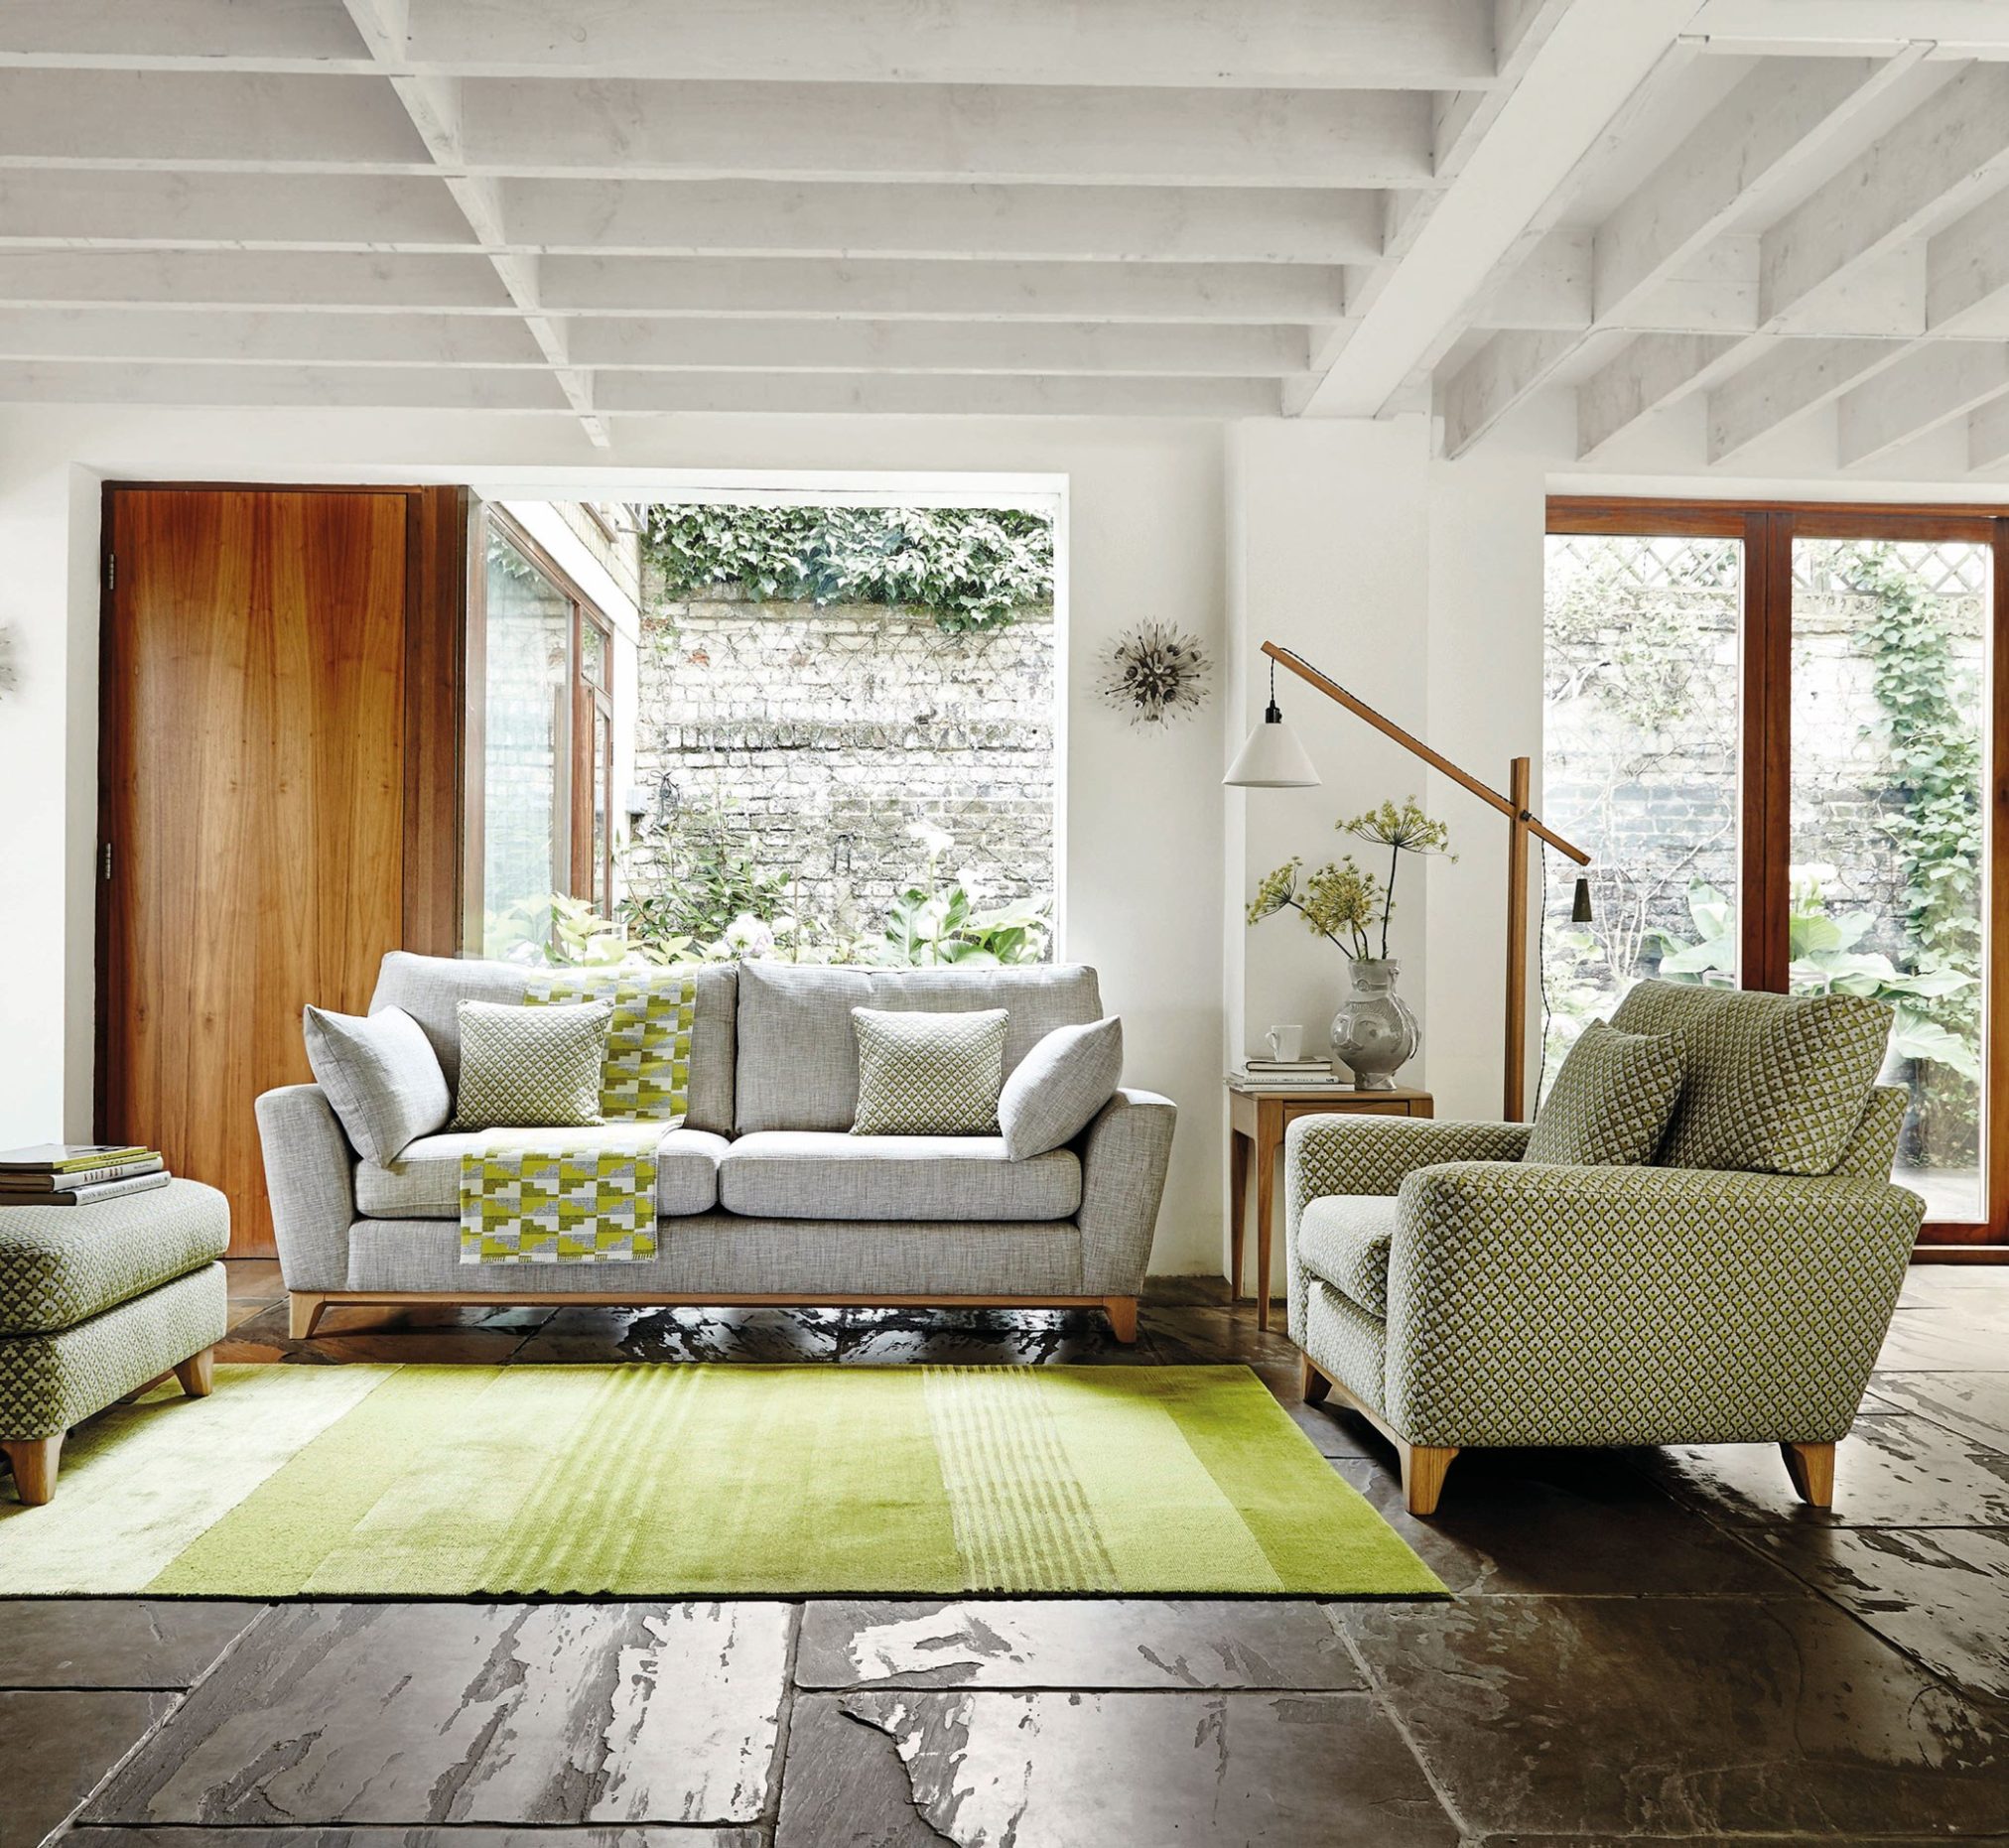 Obývací pokoj akcenty zelené barvy